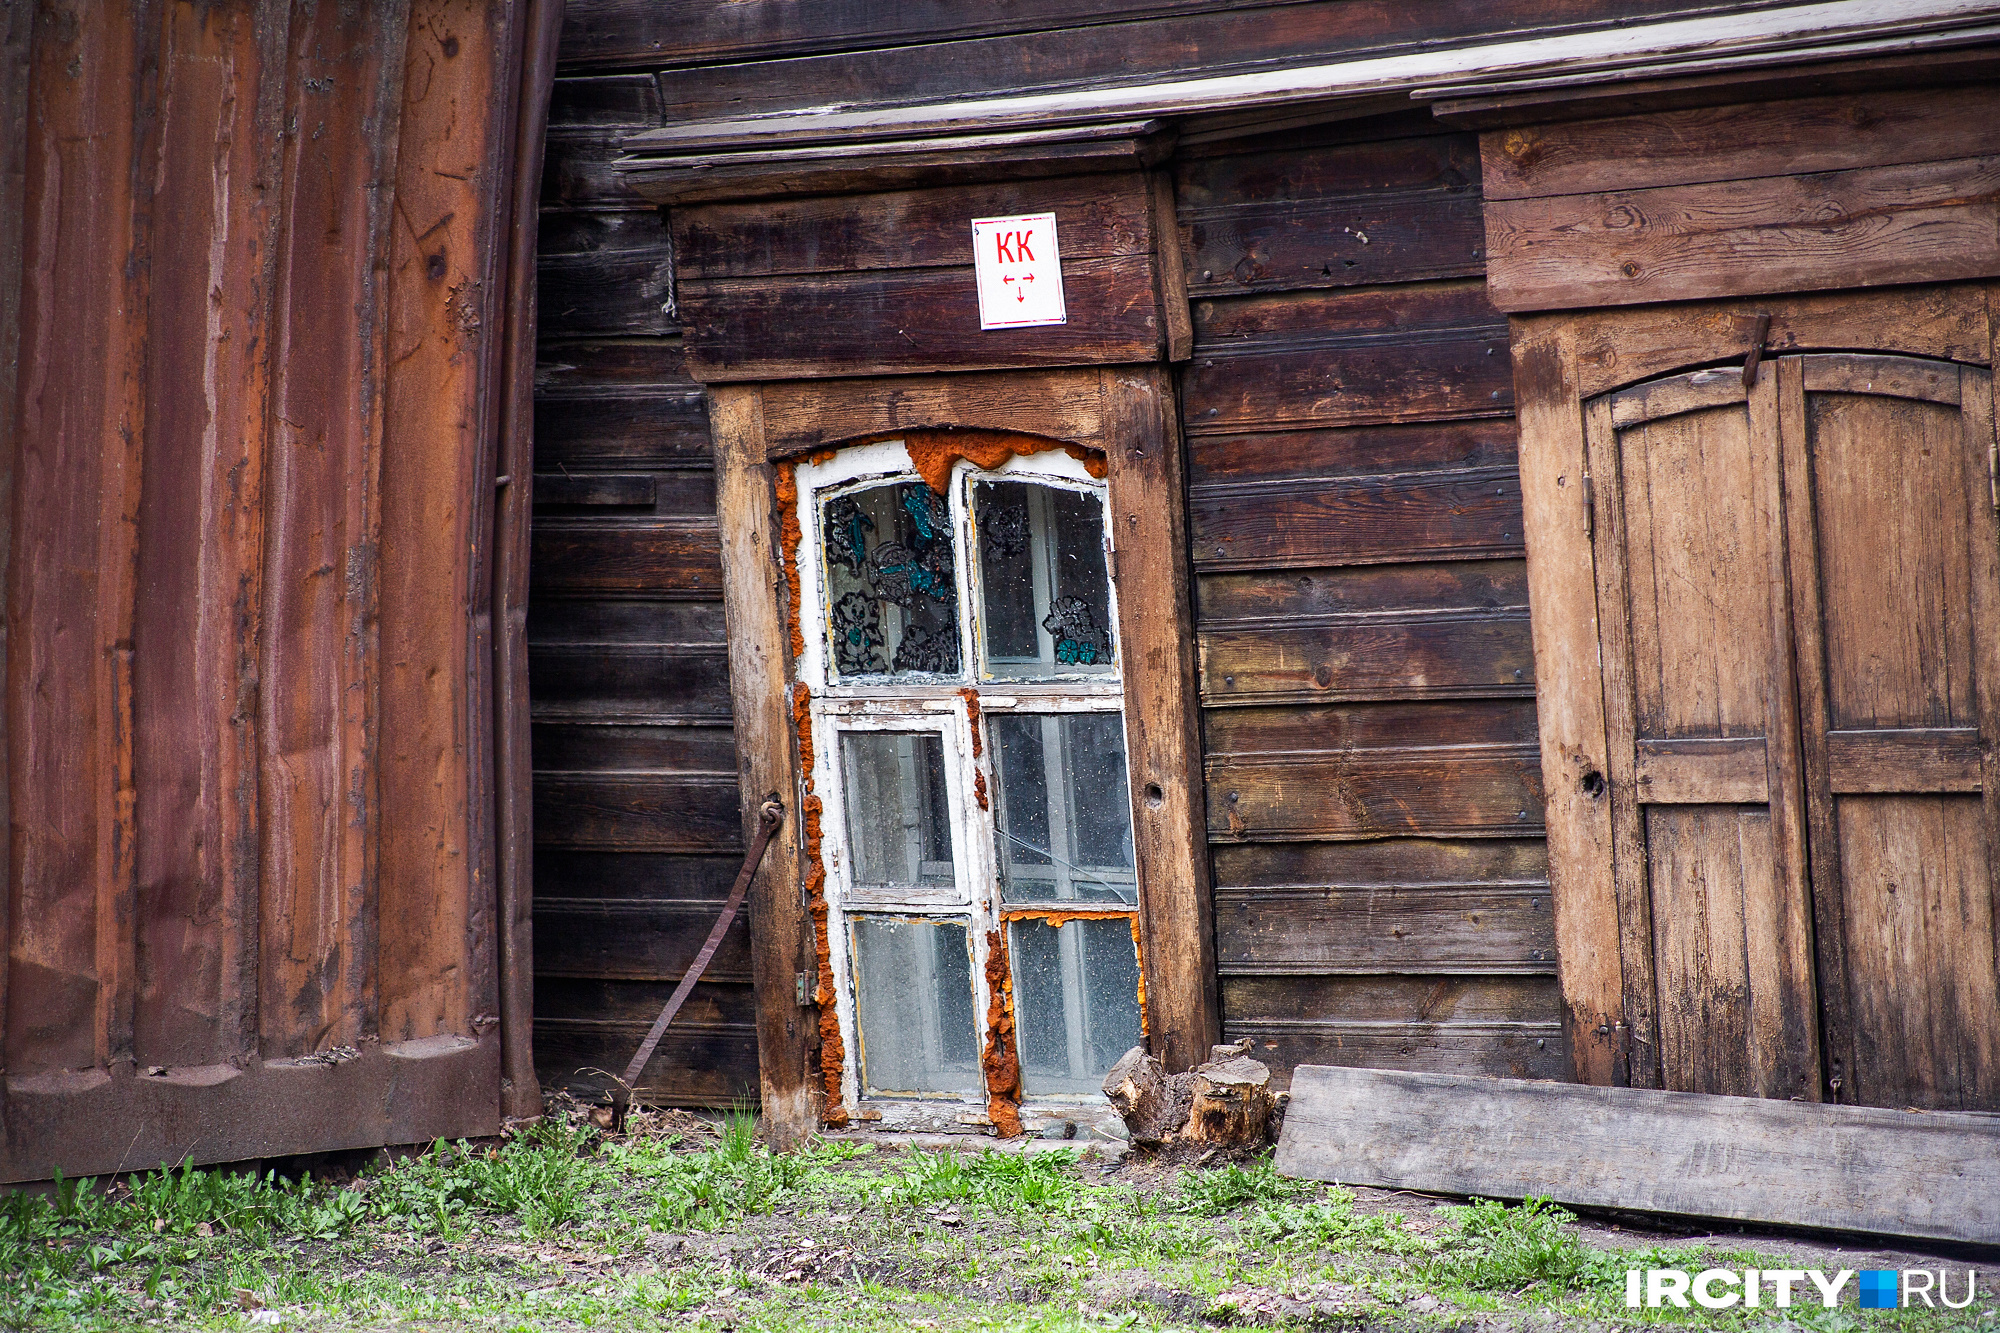 Как и многие деревянные дома Иркутска, эта парочка тоже постепенно уходит под землю